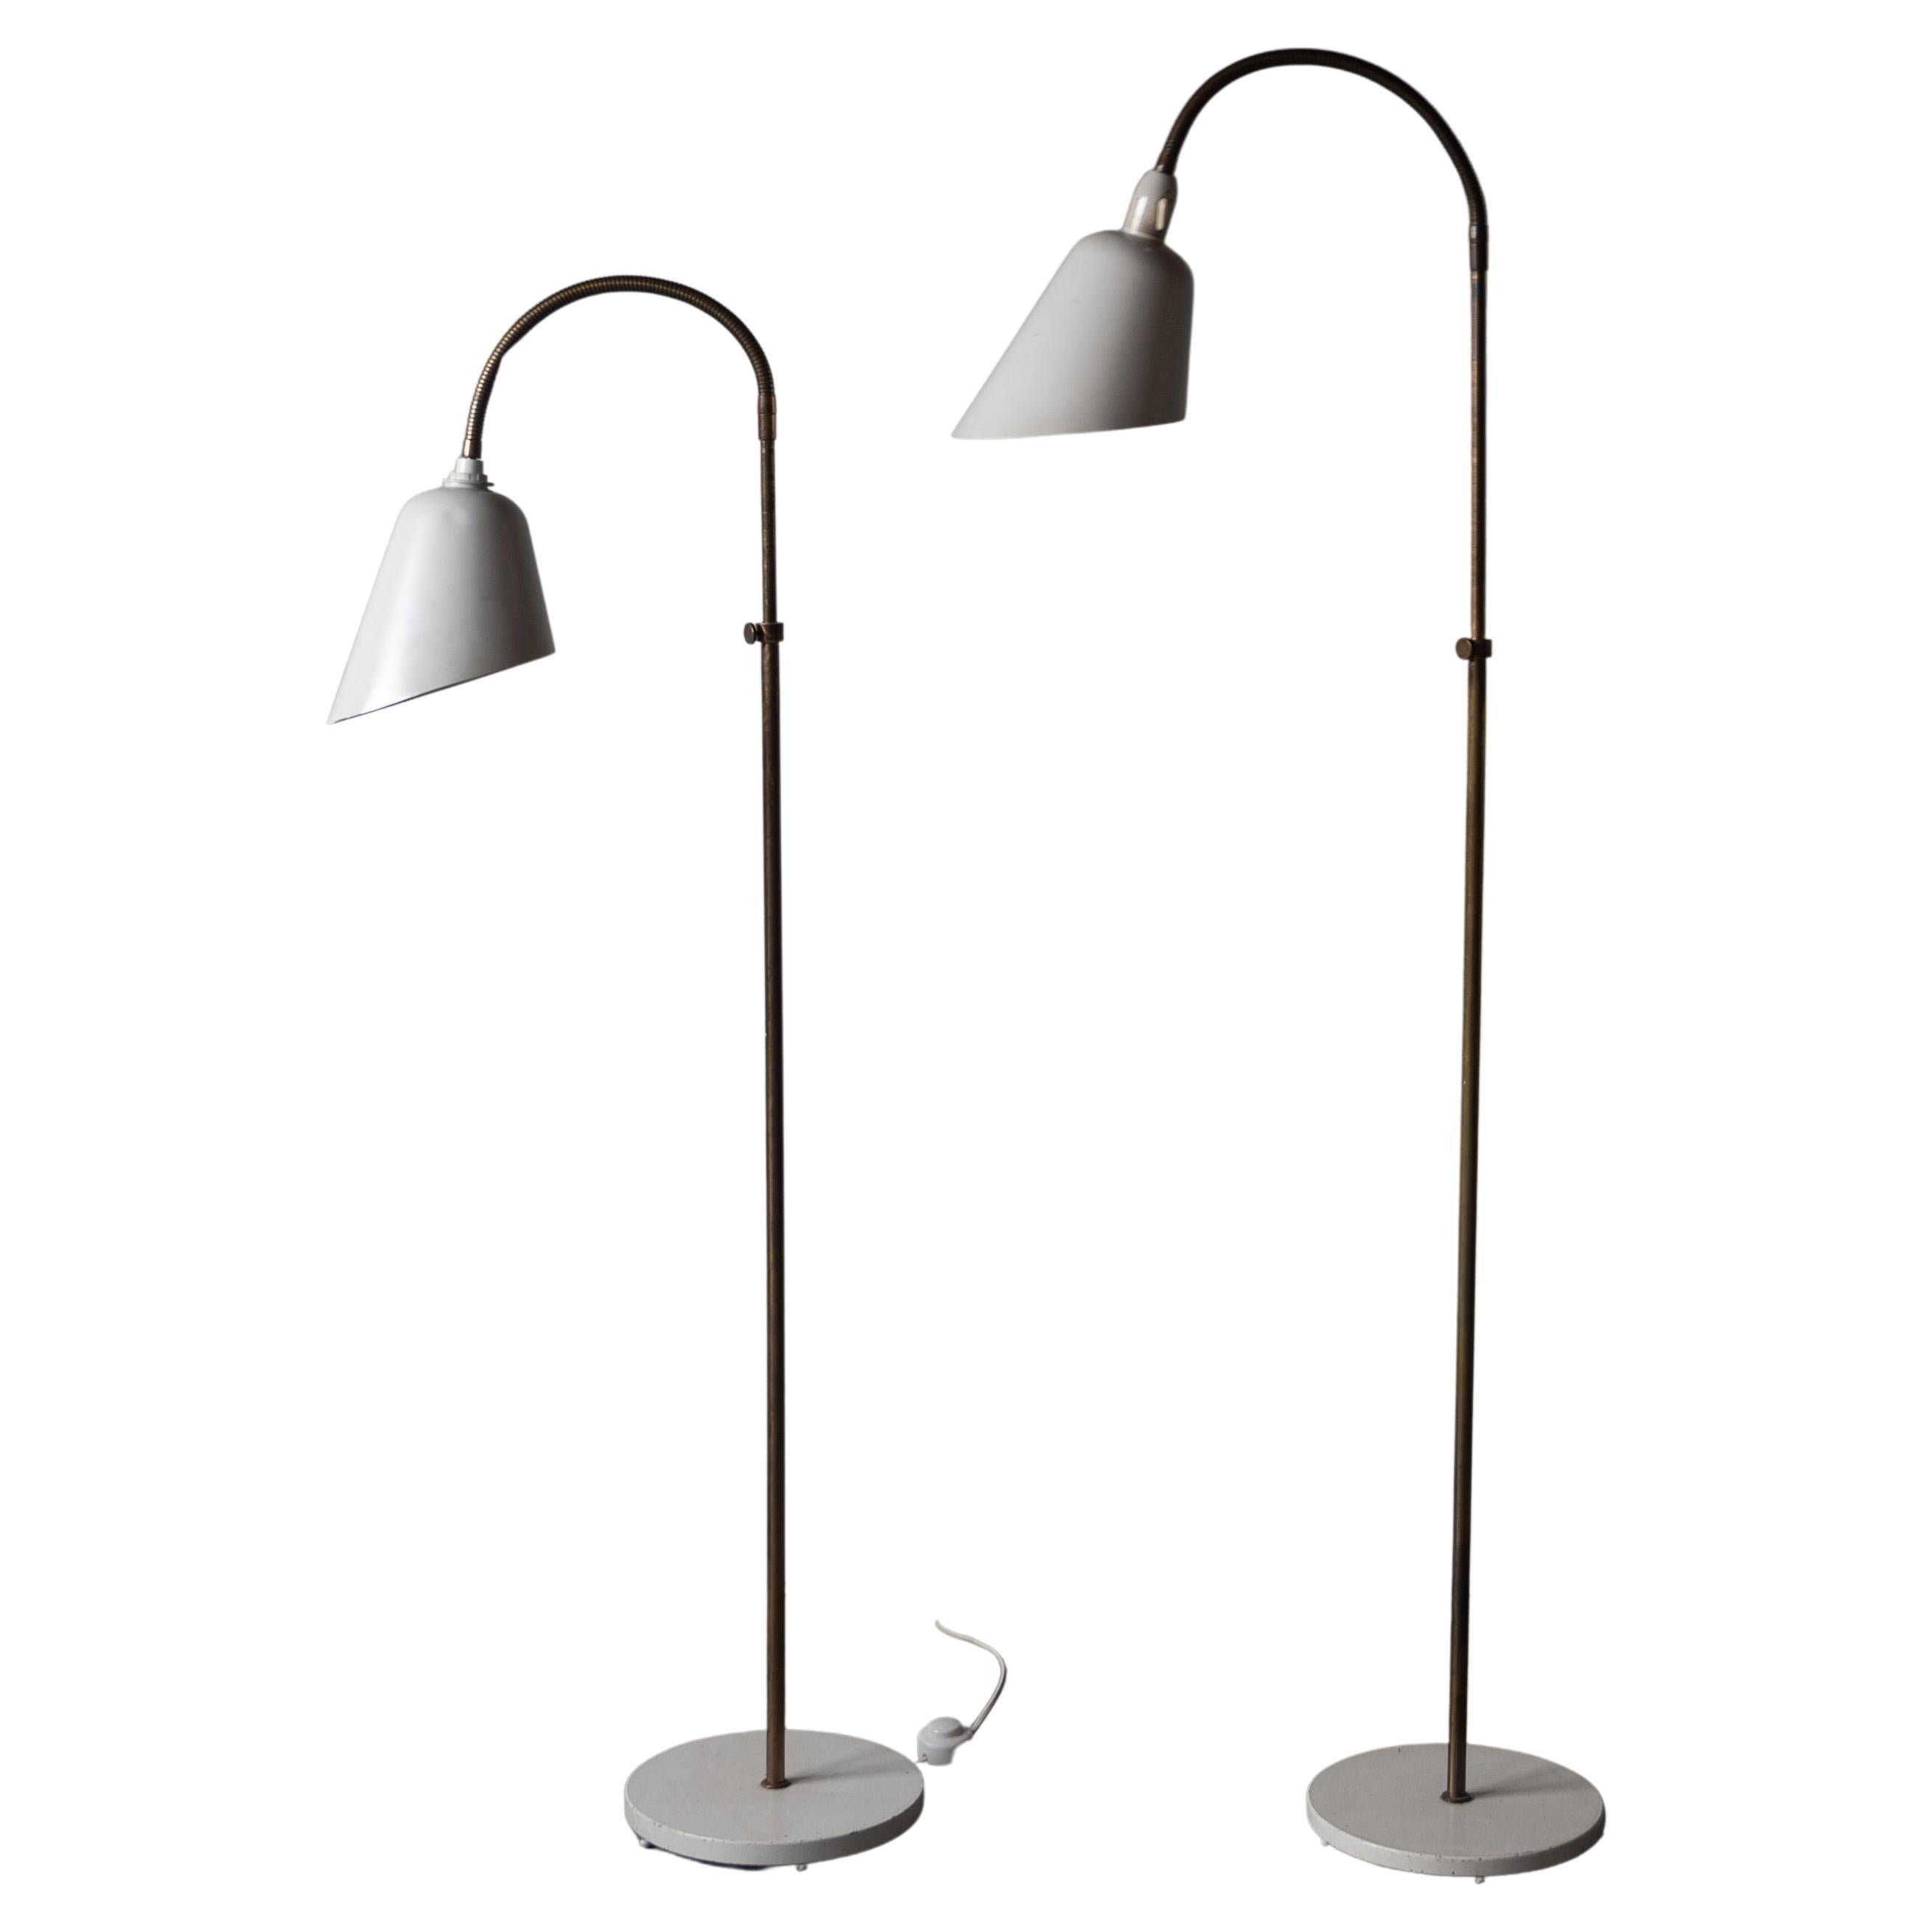 Arne Jacobsen, Adjustable Floor Lamps, Brass, Lacquered Metal, Denmark, 1929